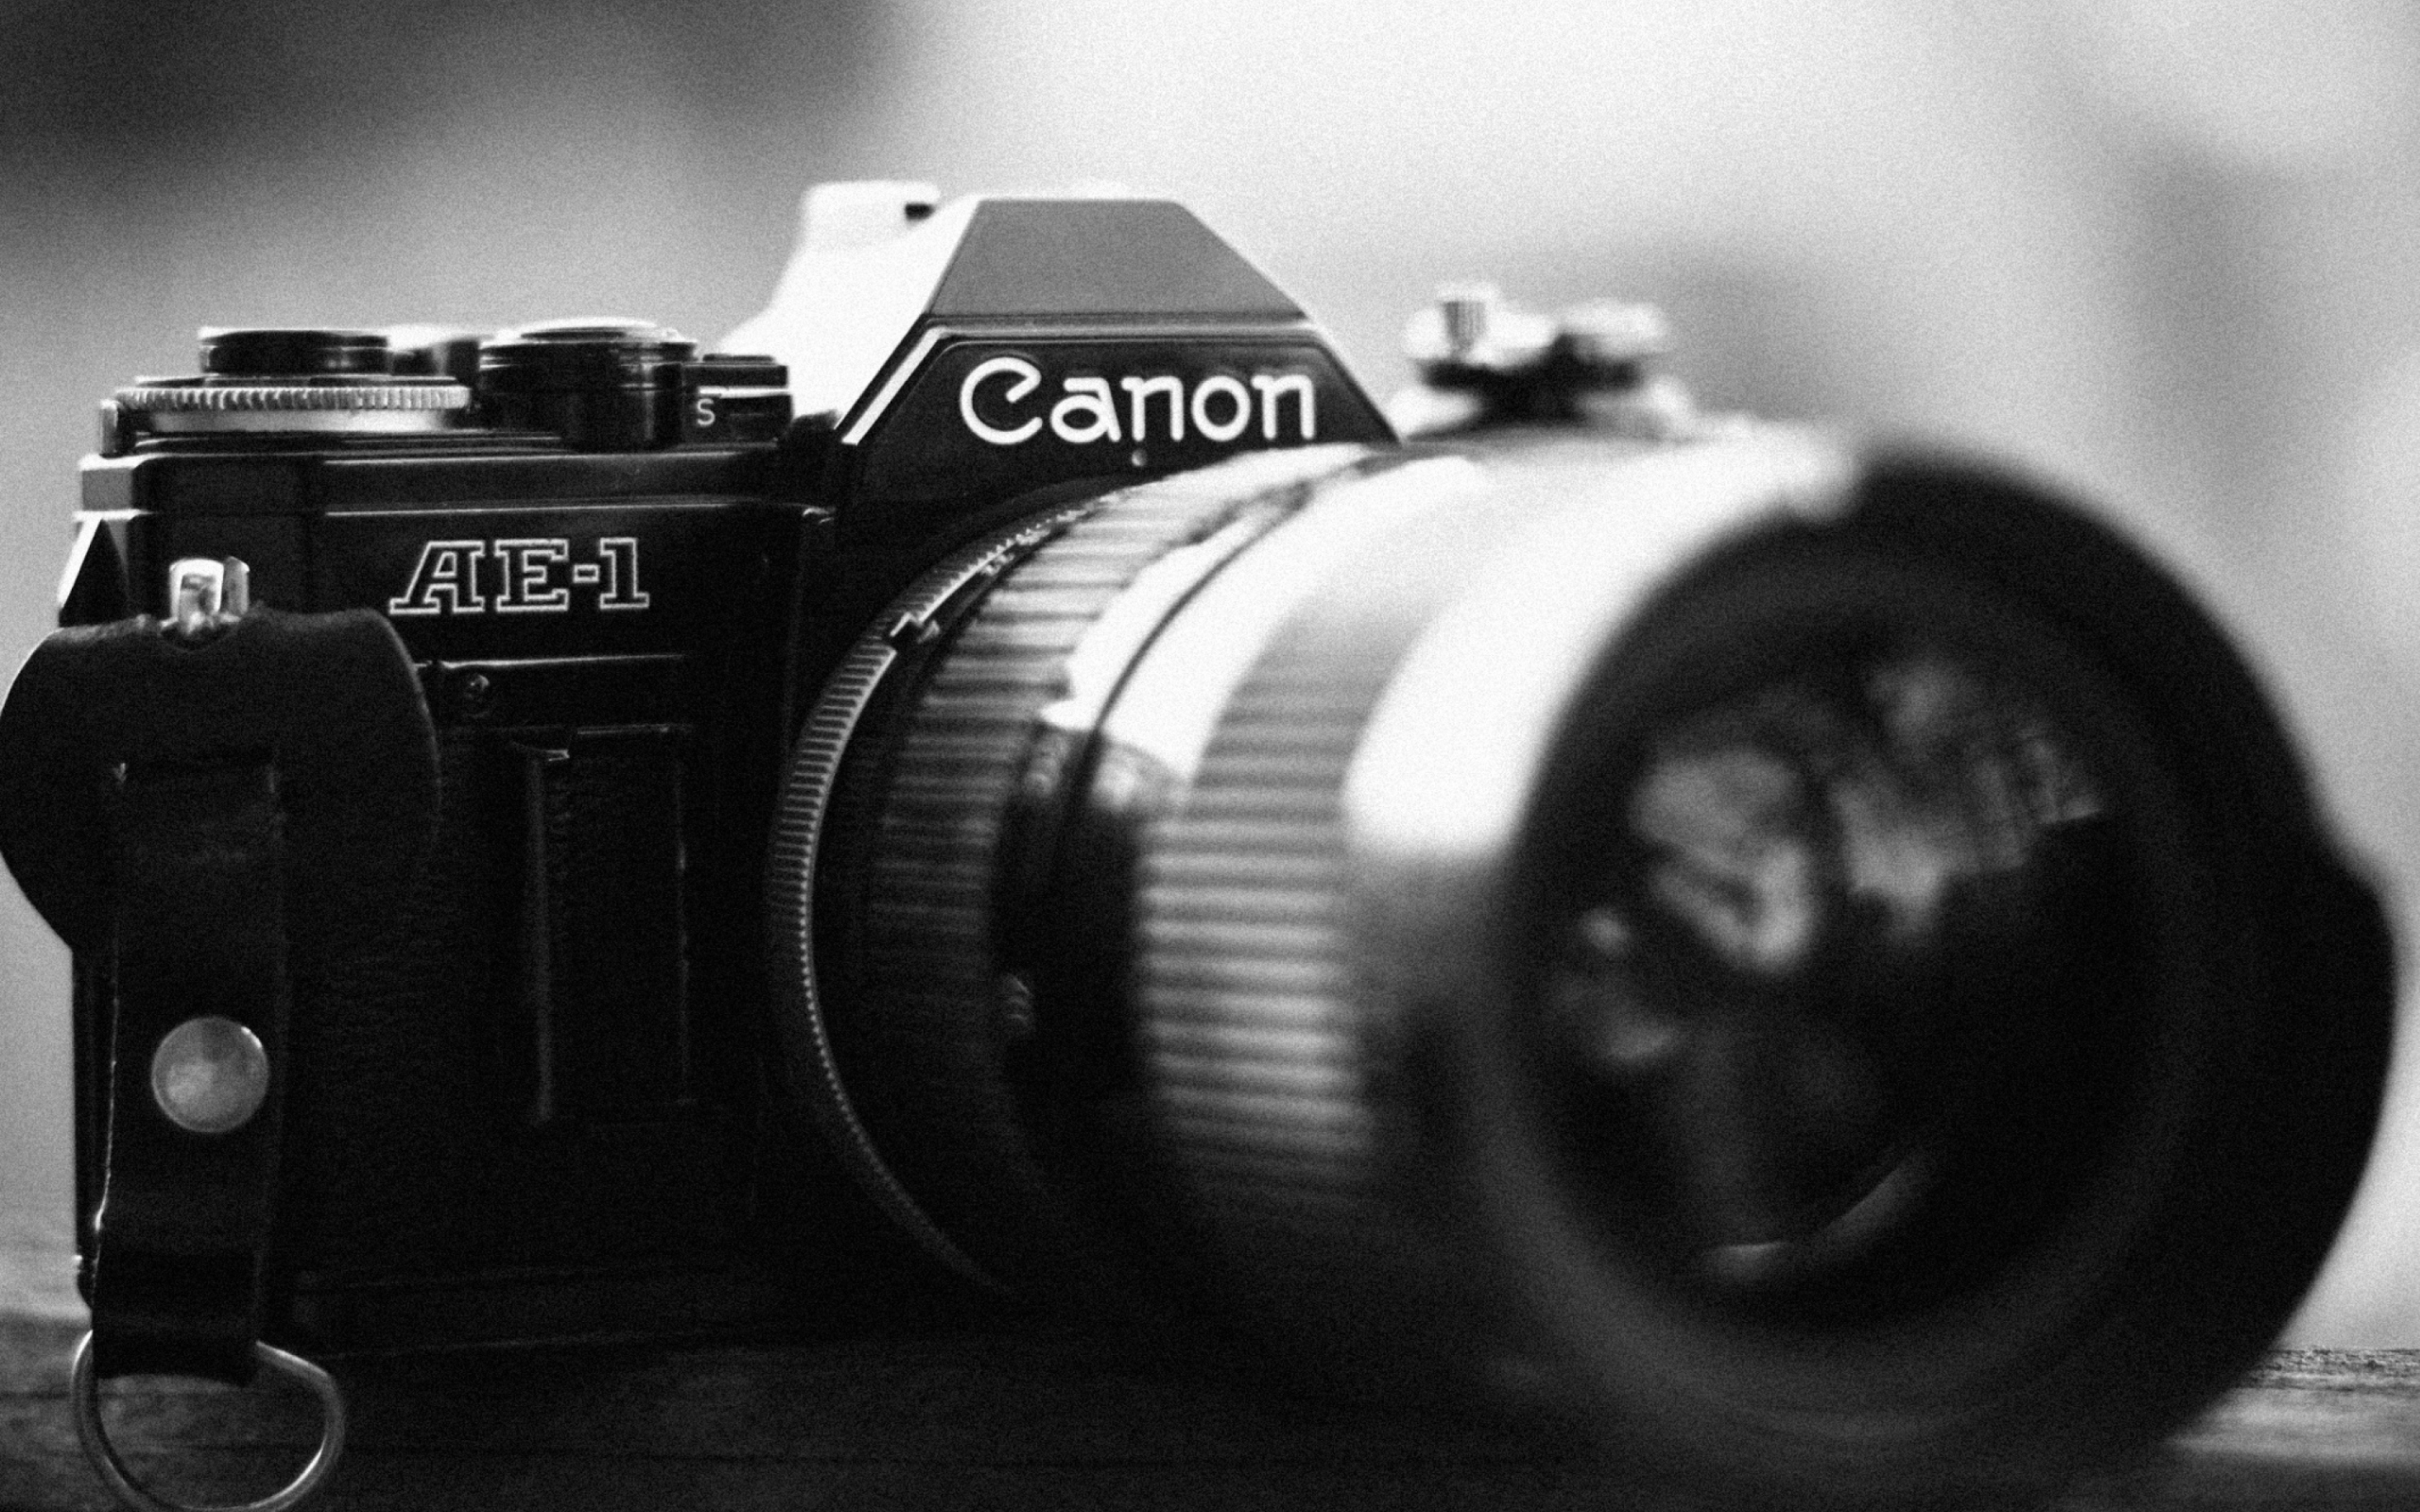 Das Ae-1 Canon Camera Wallpaper 2560x1600